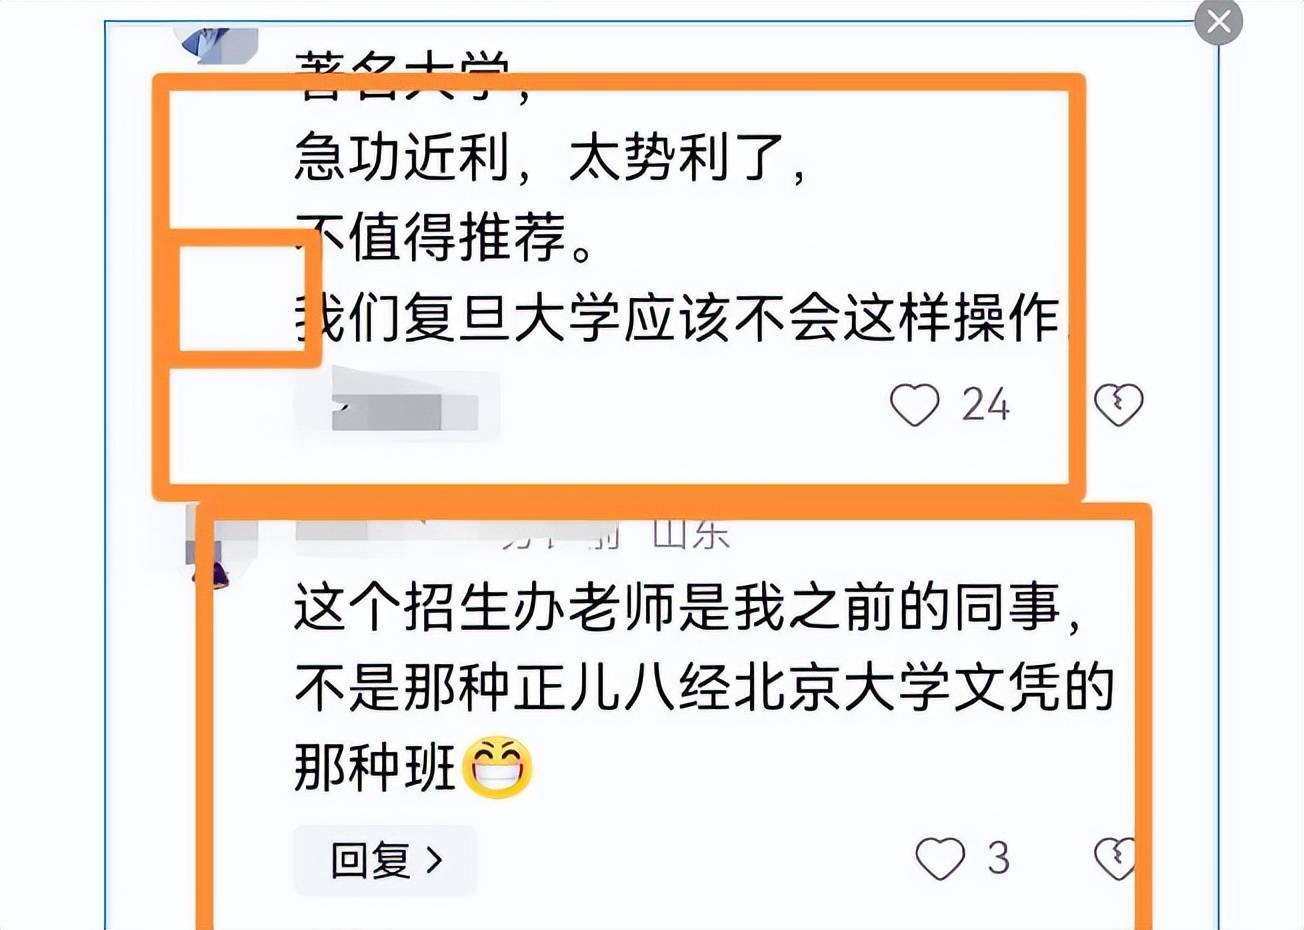 北京大学破格录取网红郭有才,网友:北大这么好上?